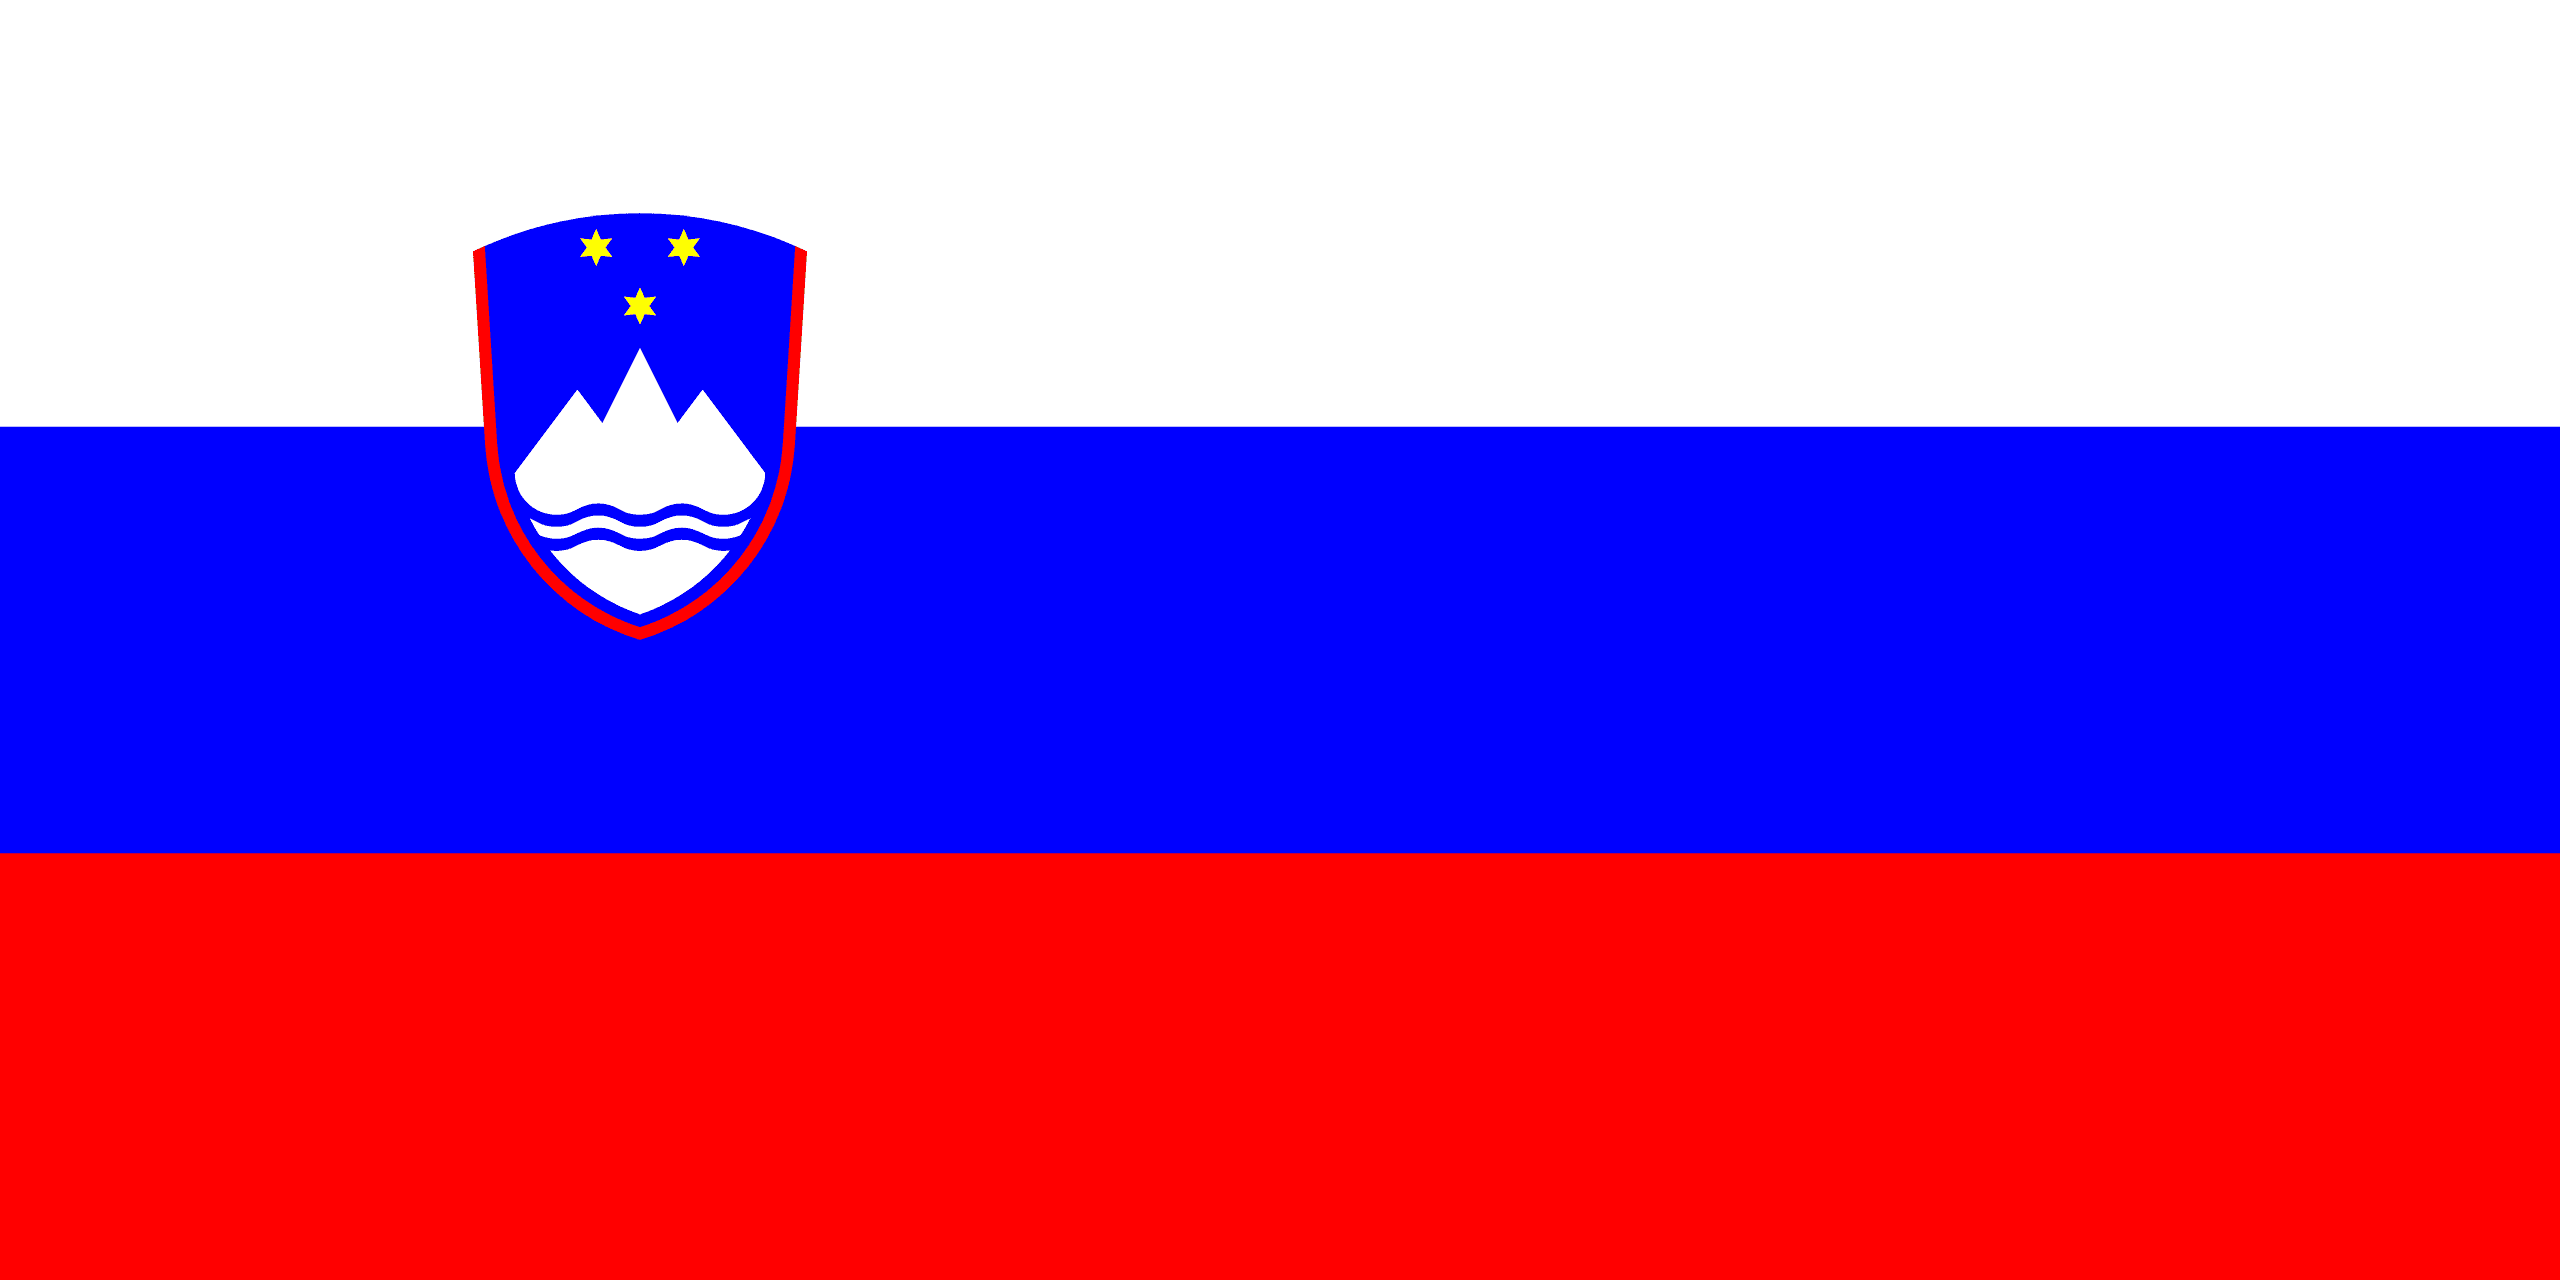 ÐÐ°ÑÑÐ¸Ð½ÐºÐ¸ Ð¿Ð¾ Ð·Ð°Ð¿ÑÐ¾ÑÑ Republic of Slovenia flag